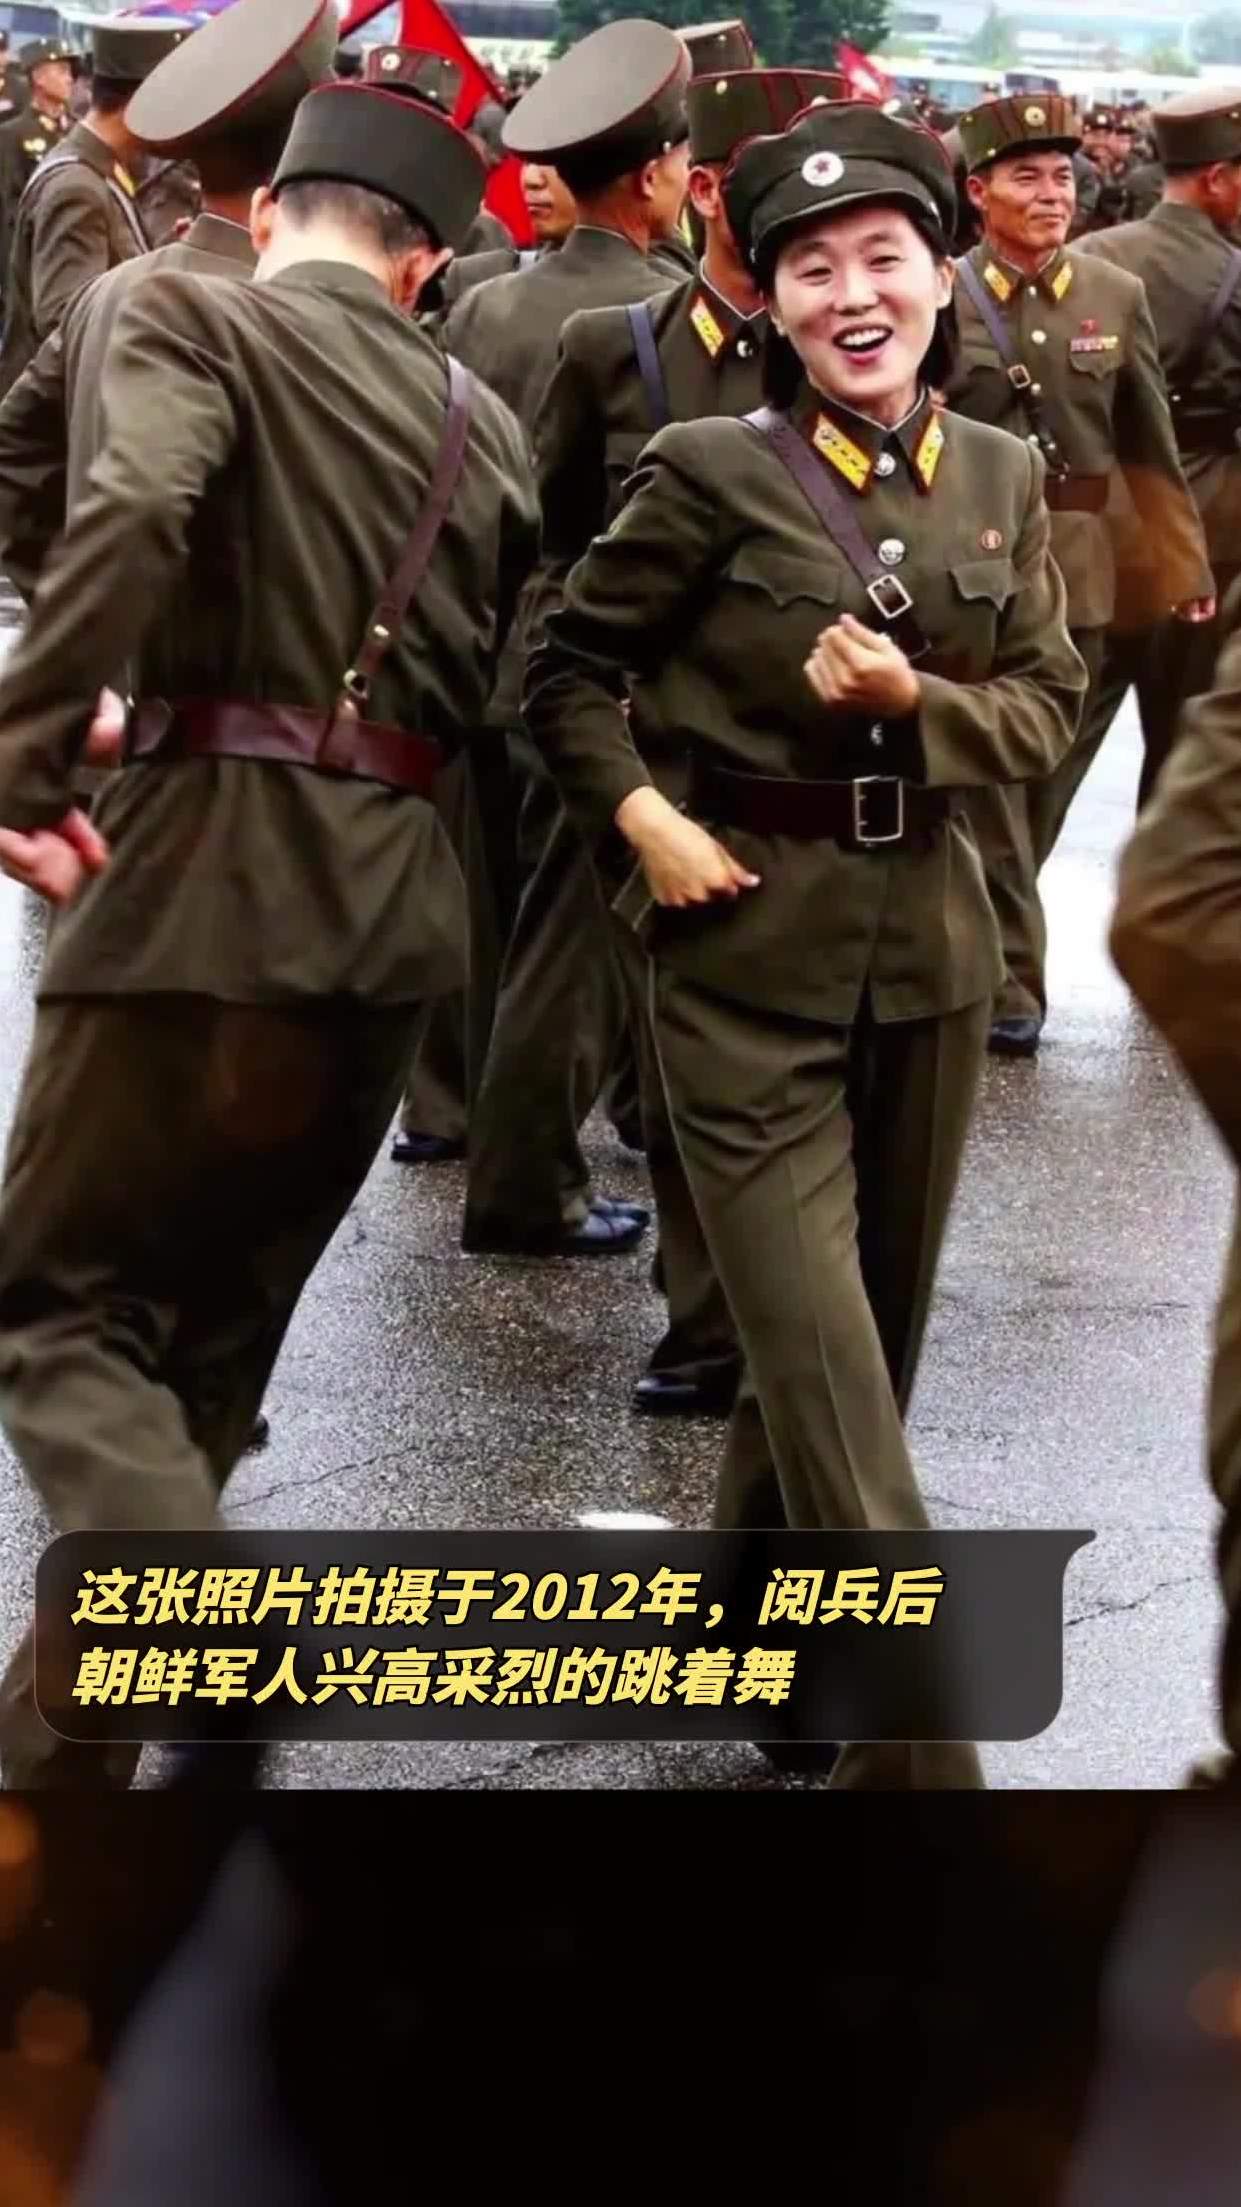 这张照片拍摄于2012年,阅兵后朝鲜军人兴高采烈的跳着舞